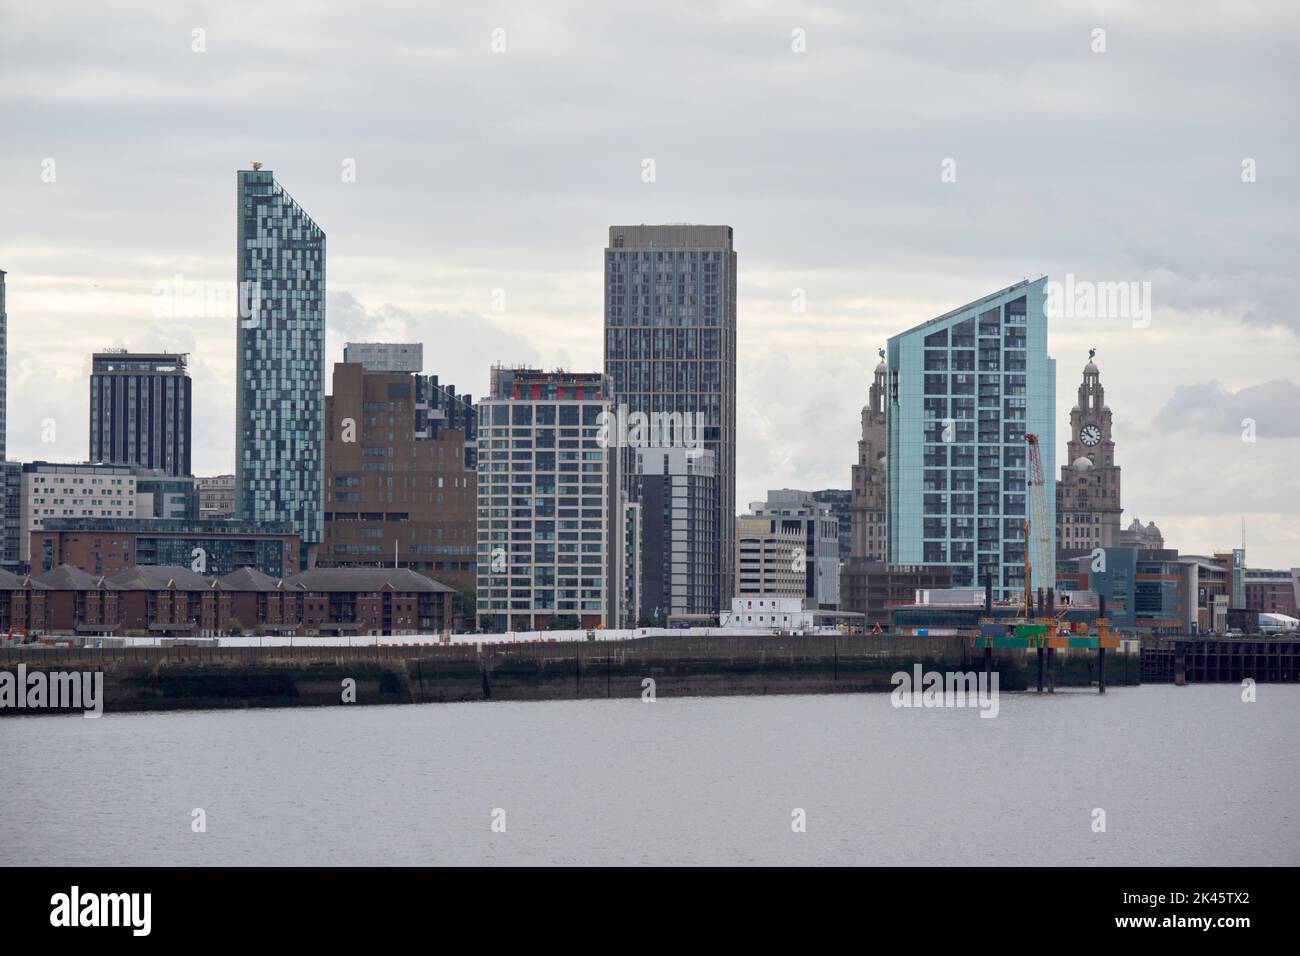 Nuevos edificios rascacielos y bloques de apartamentos parte del desarrollo de aguas de liverpool en curso en la zona ribereña de vauxhall centro de la ciudad de Liverpool Foto de stock